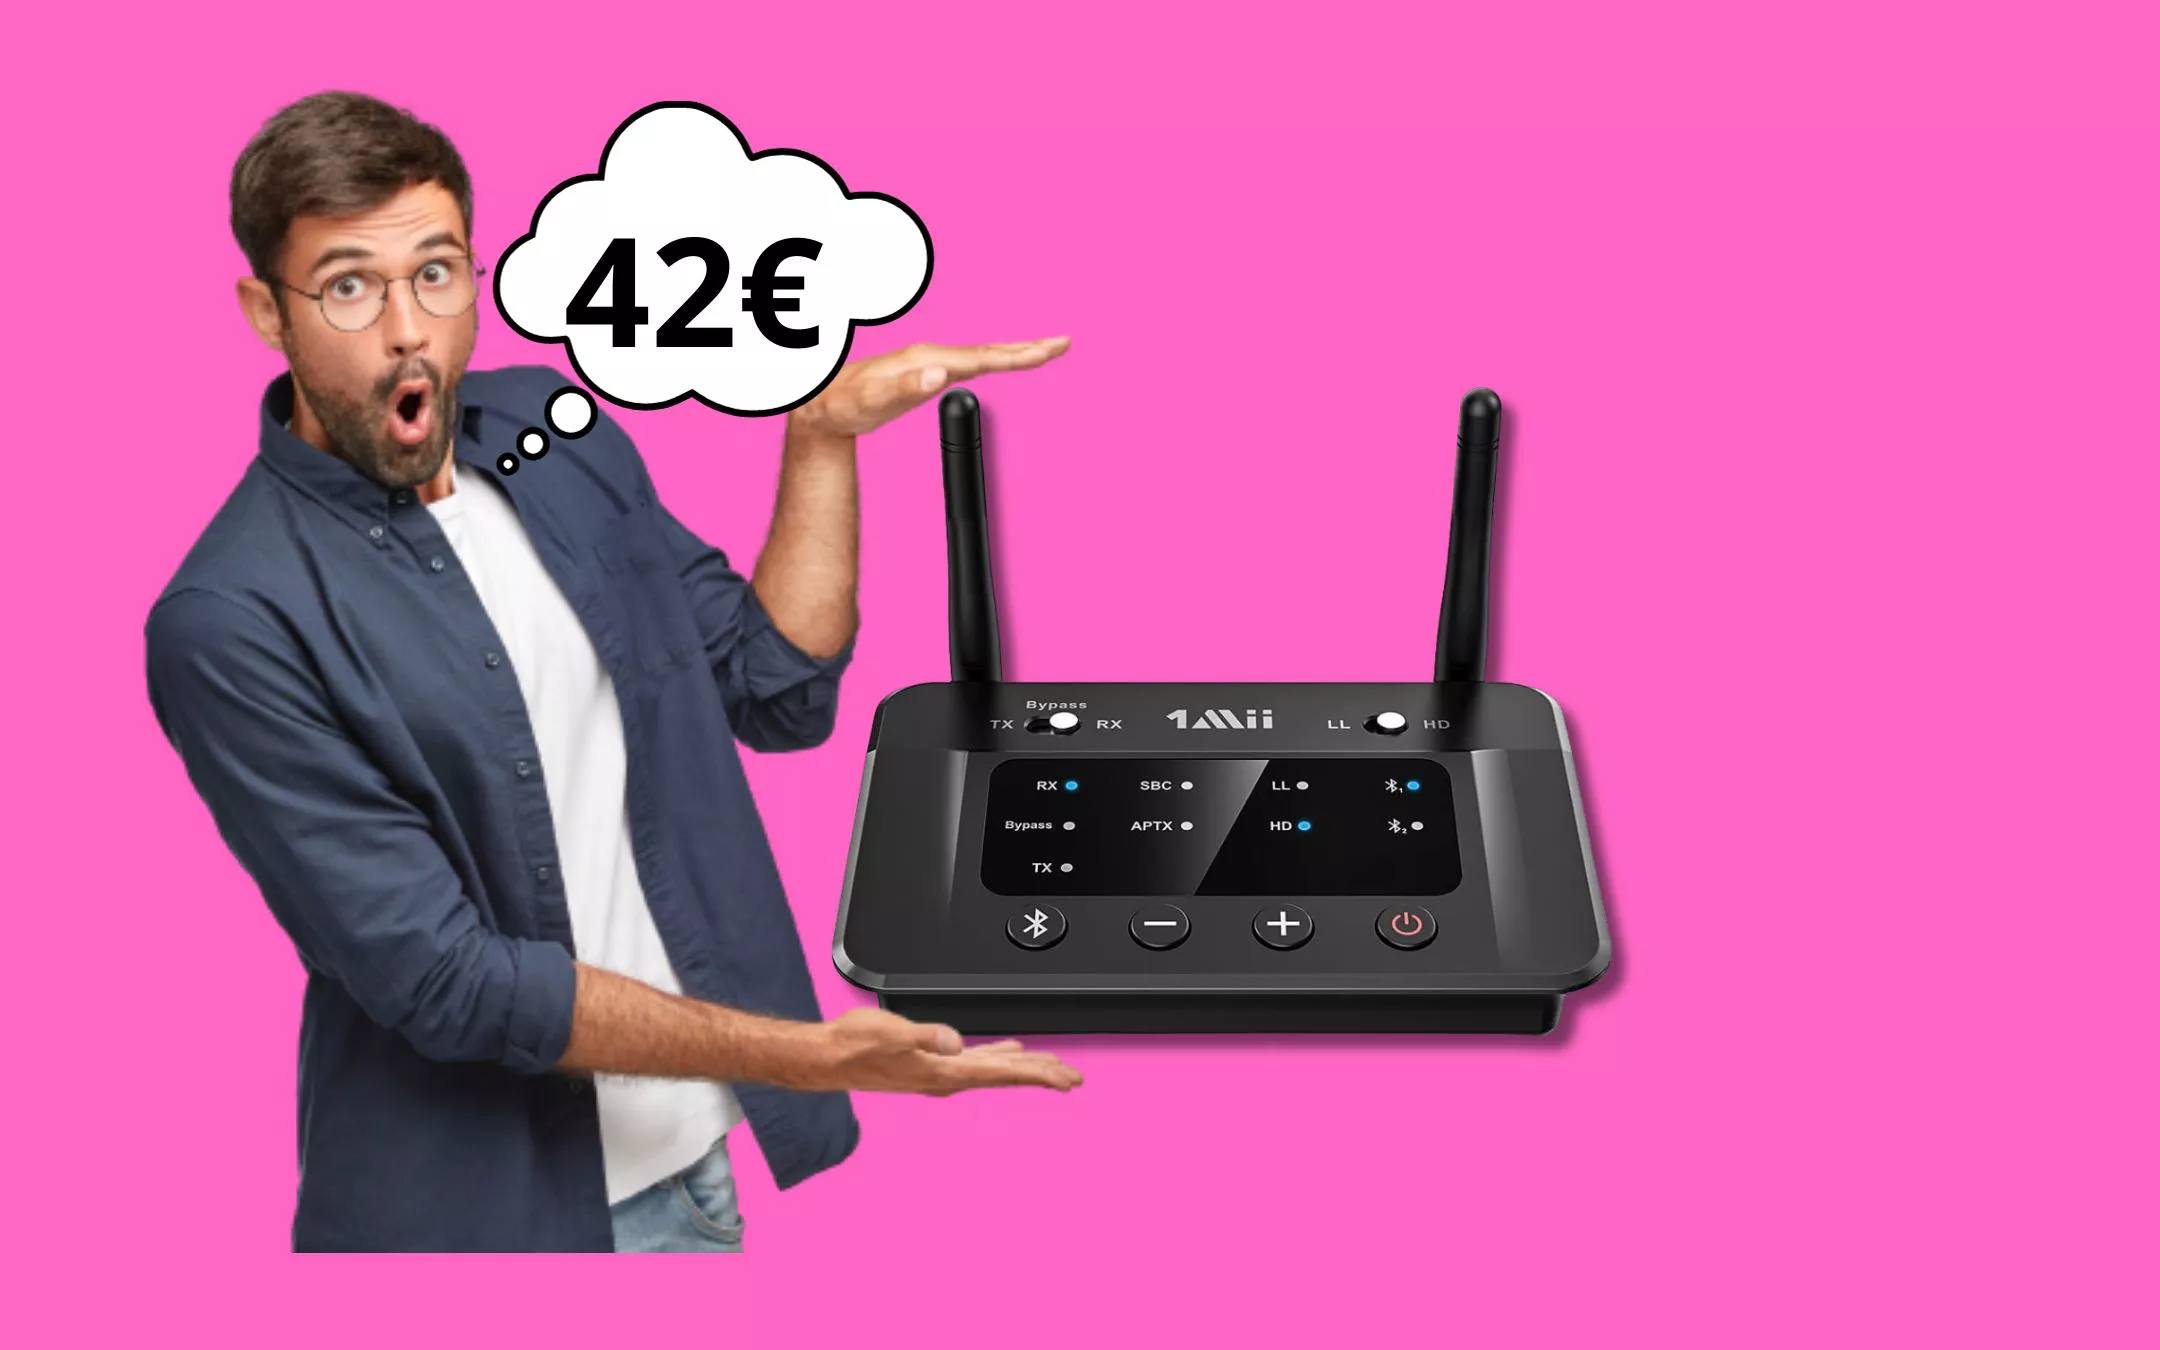 Trasmettitore Bluetooth 5.3 per TV e Pc a soli 42 euro! - Webnews